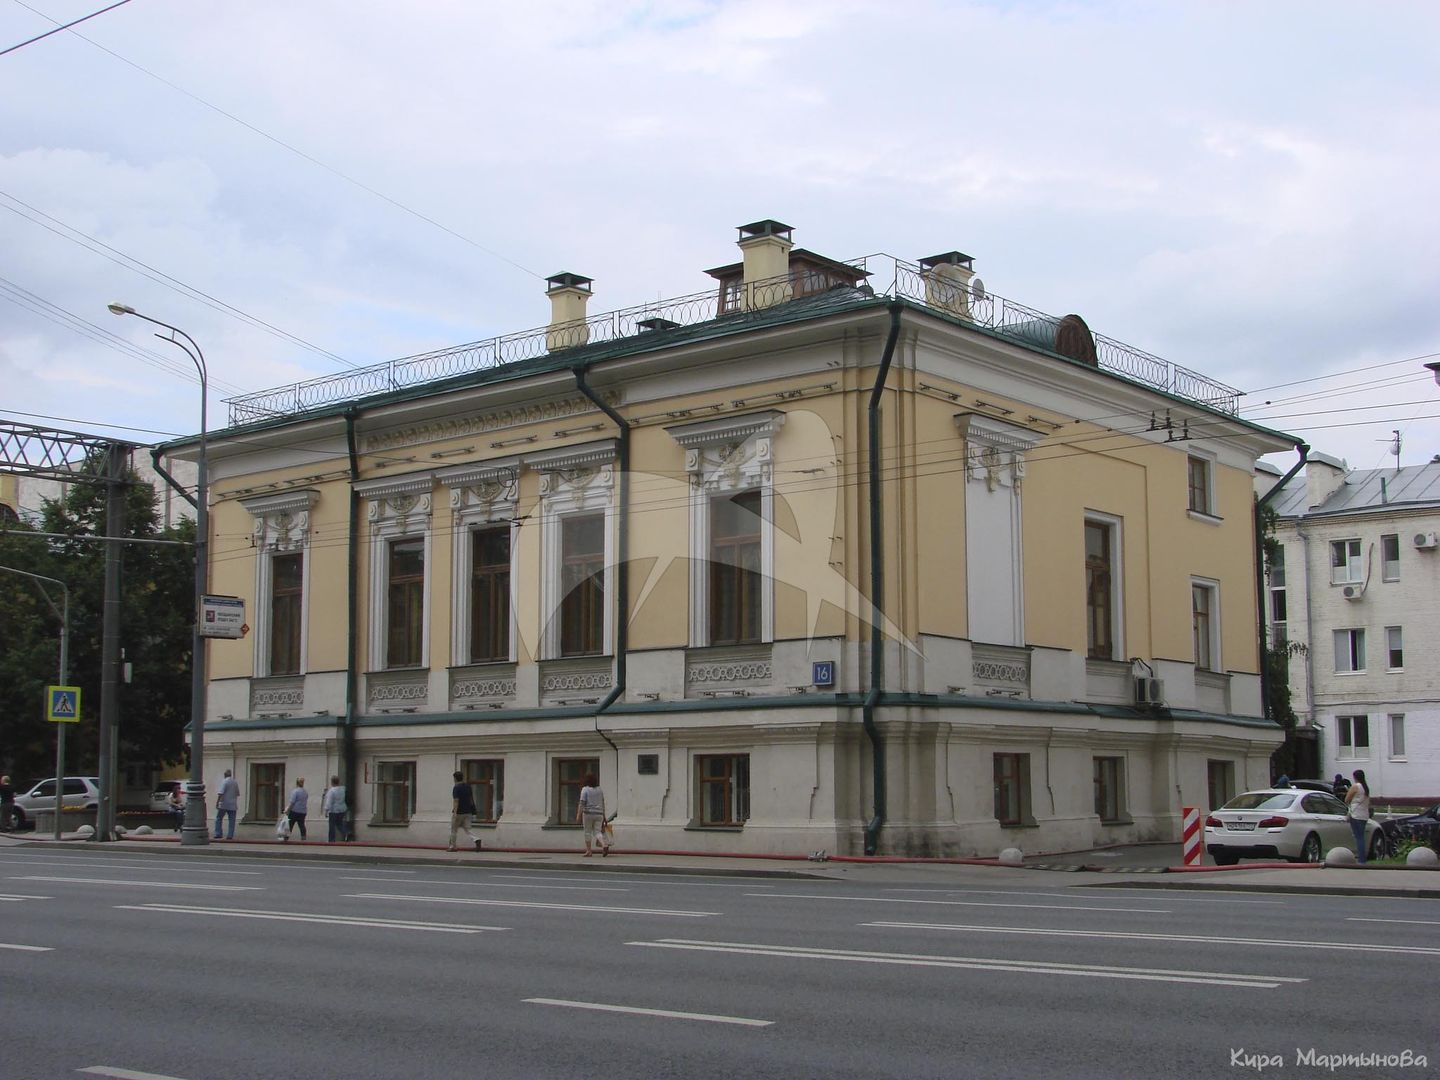 Дом Долгова, 1770 г., арх. В.И. Баженов